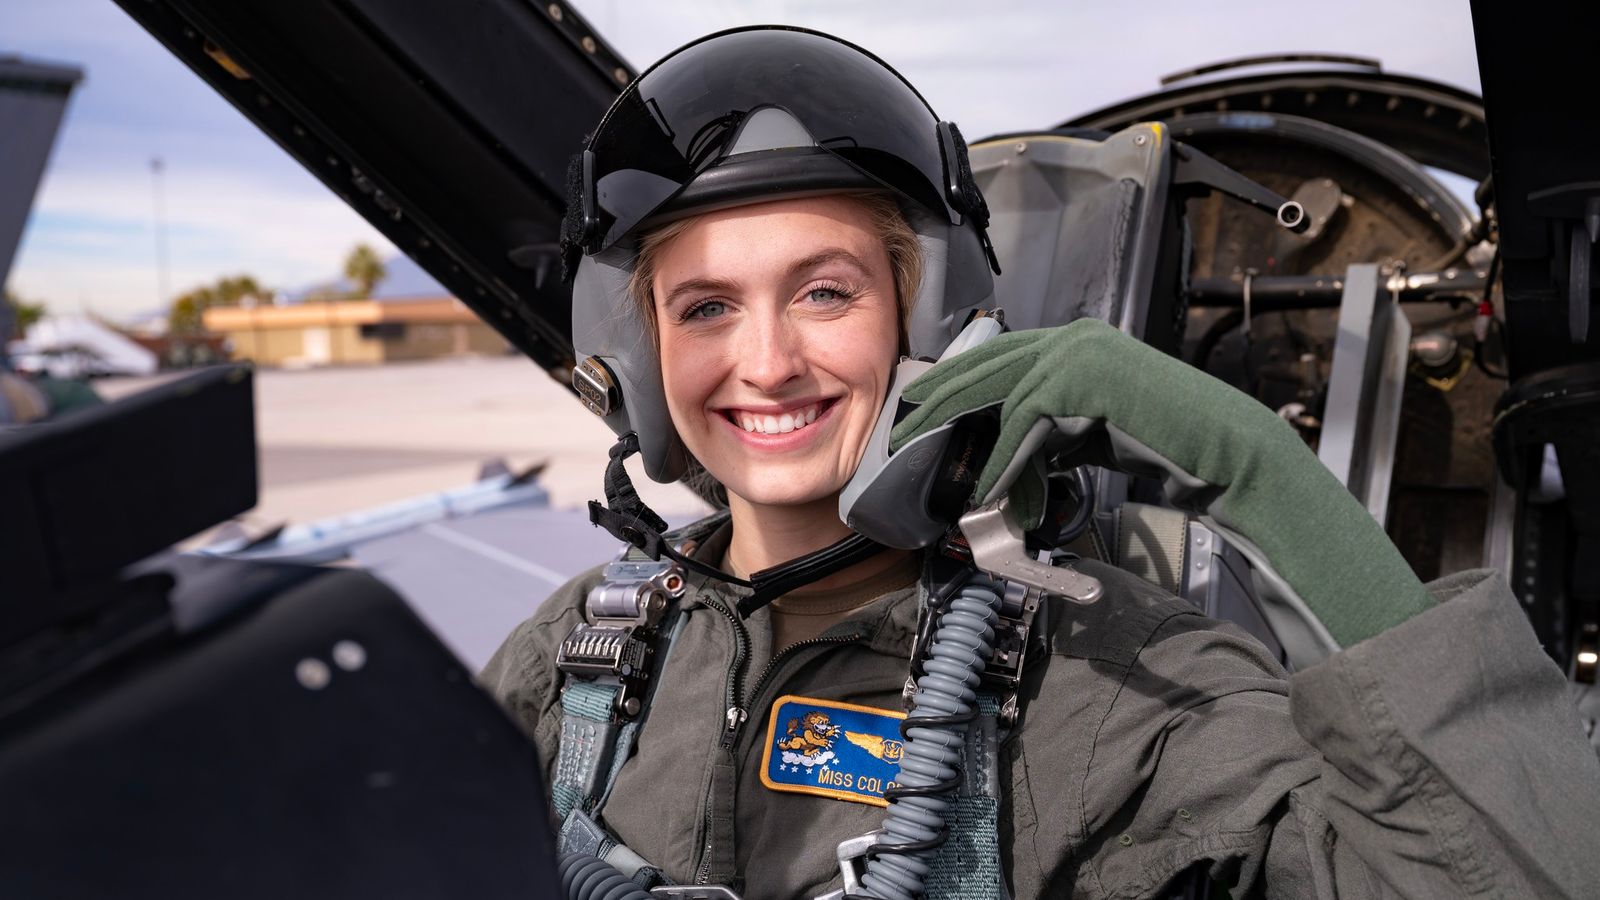 الطيارة المقاتلة ماديسون مارش تحقق إنجازًا تاريخيًا بفوزها بلقب ملكة جمال أمريكا